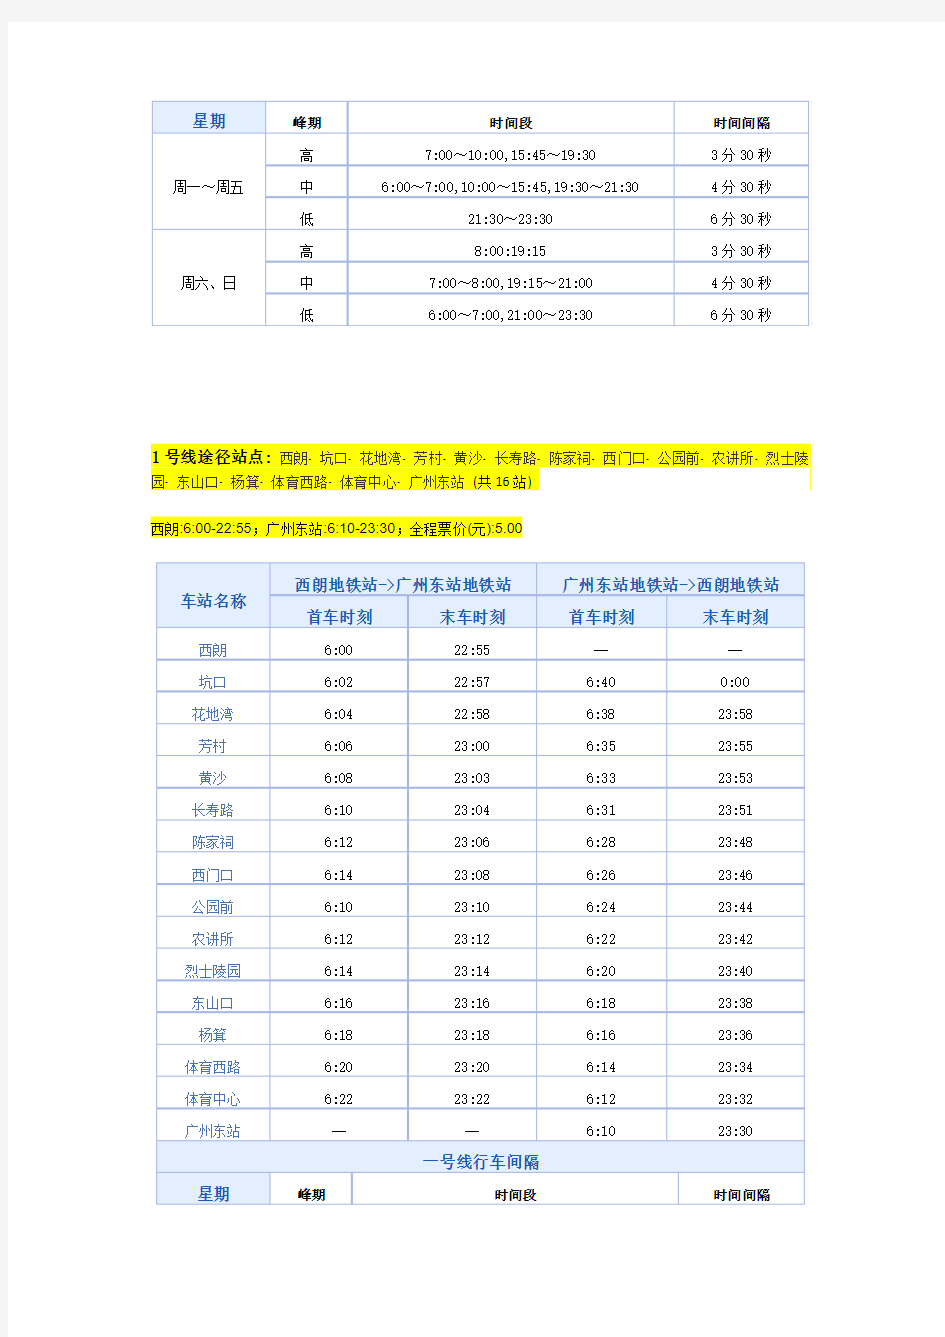 广州地铁线路说明-发车时间及间隔-2014